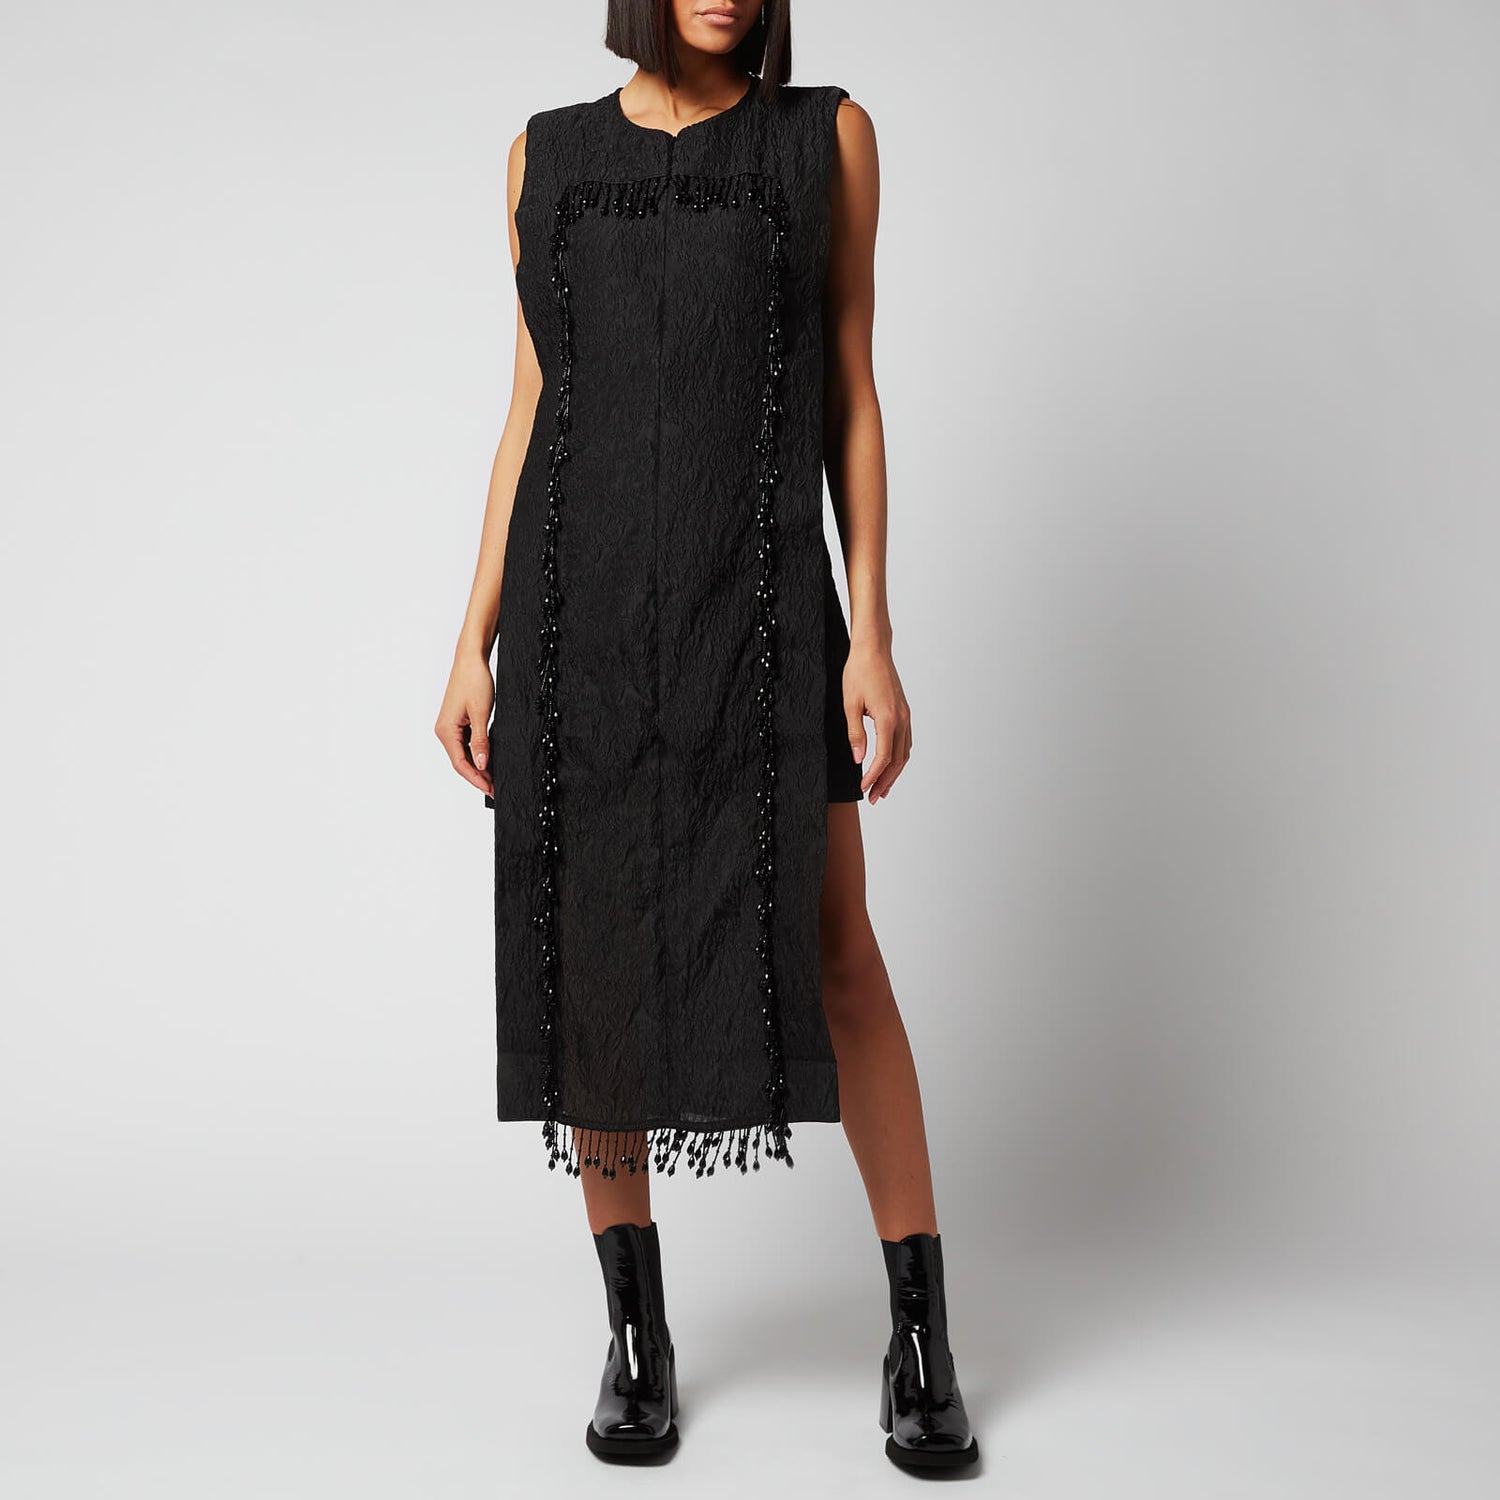 Ganni Women's Jacquard Organza Mid Dress - Black - EU 34/UK 6